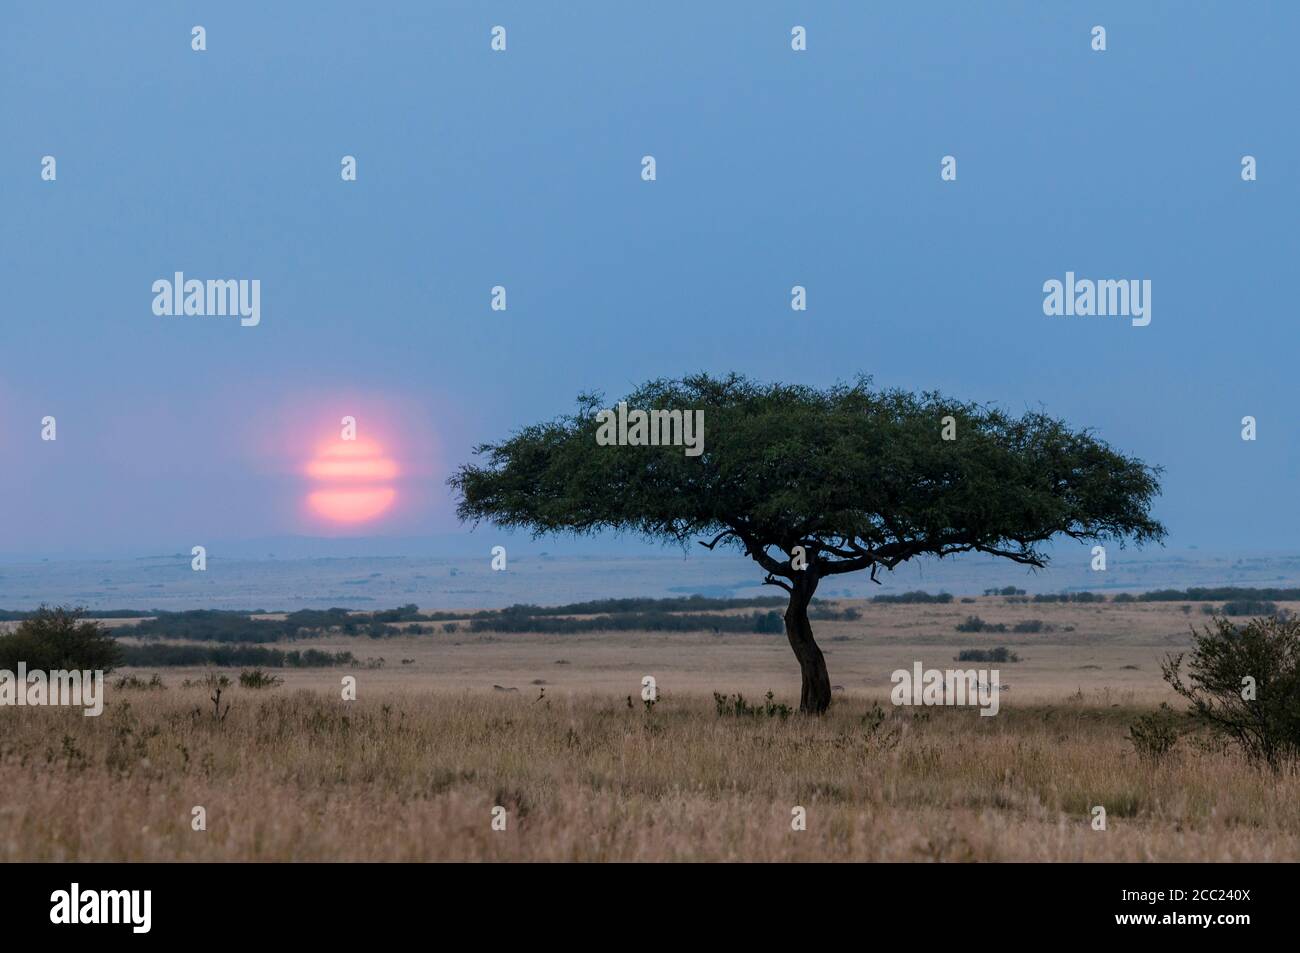 Afrique, Kenya, coucher de soleil au parc national de Maasai Mara Banque D'Images